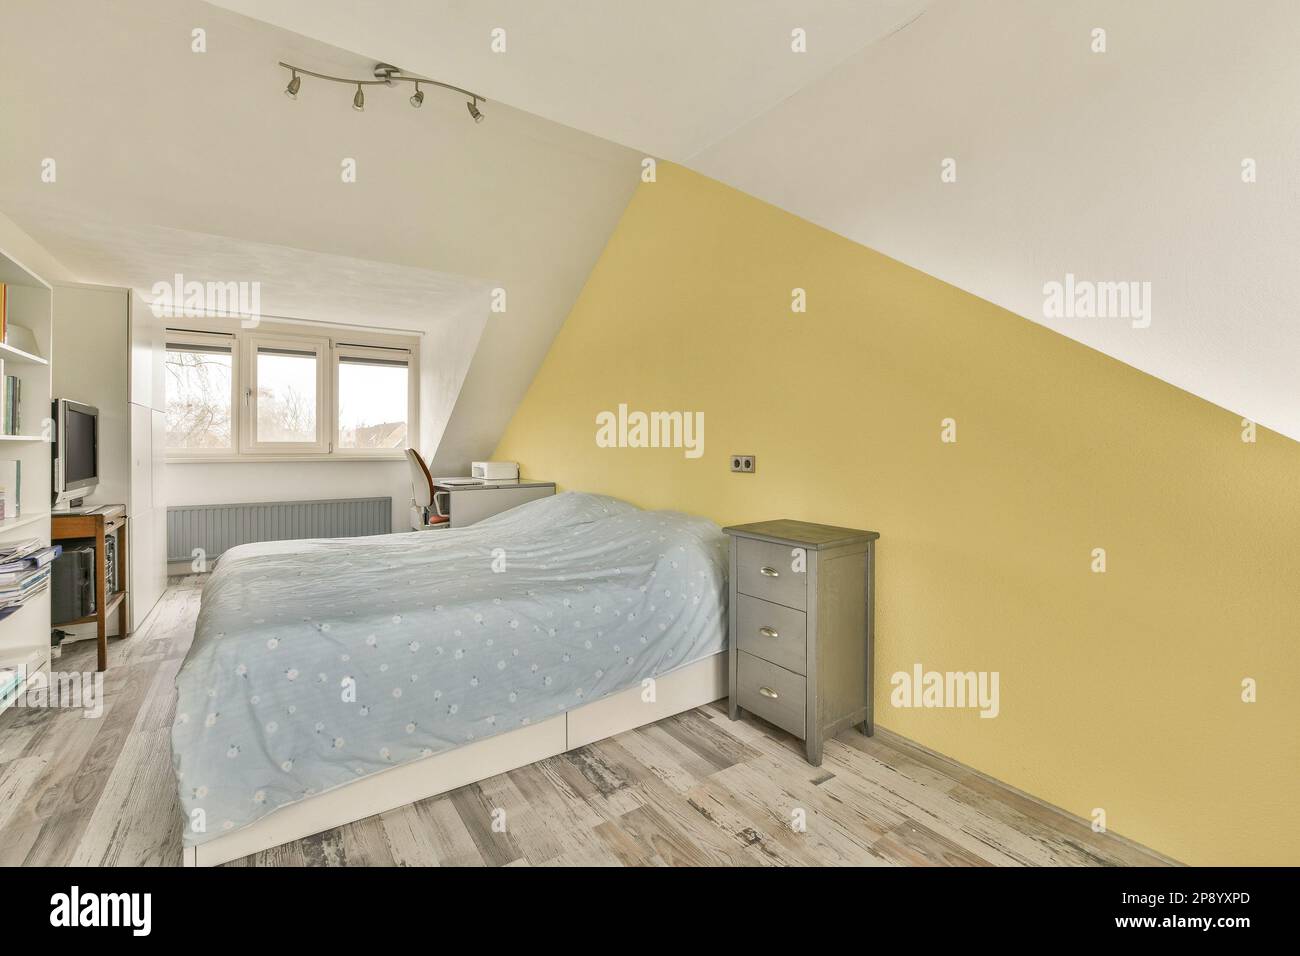 Ein Schlafzimmer mit gelben Wänden und Holzfußboden an der Wand, es gibt einen Fernseher in der Ecke neben dem Bett Stockfoto